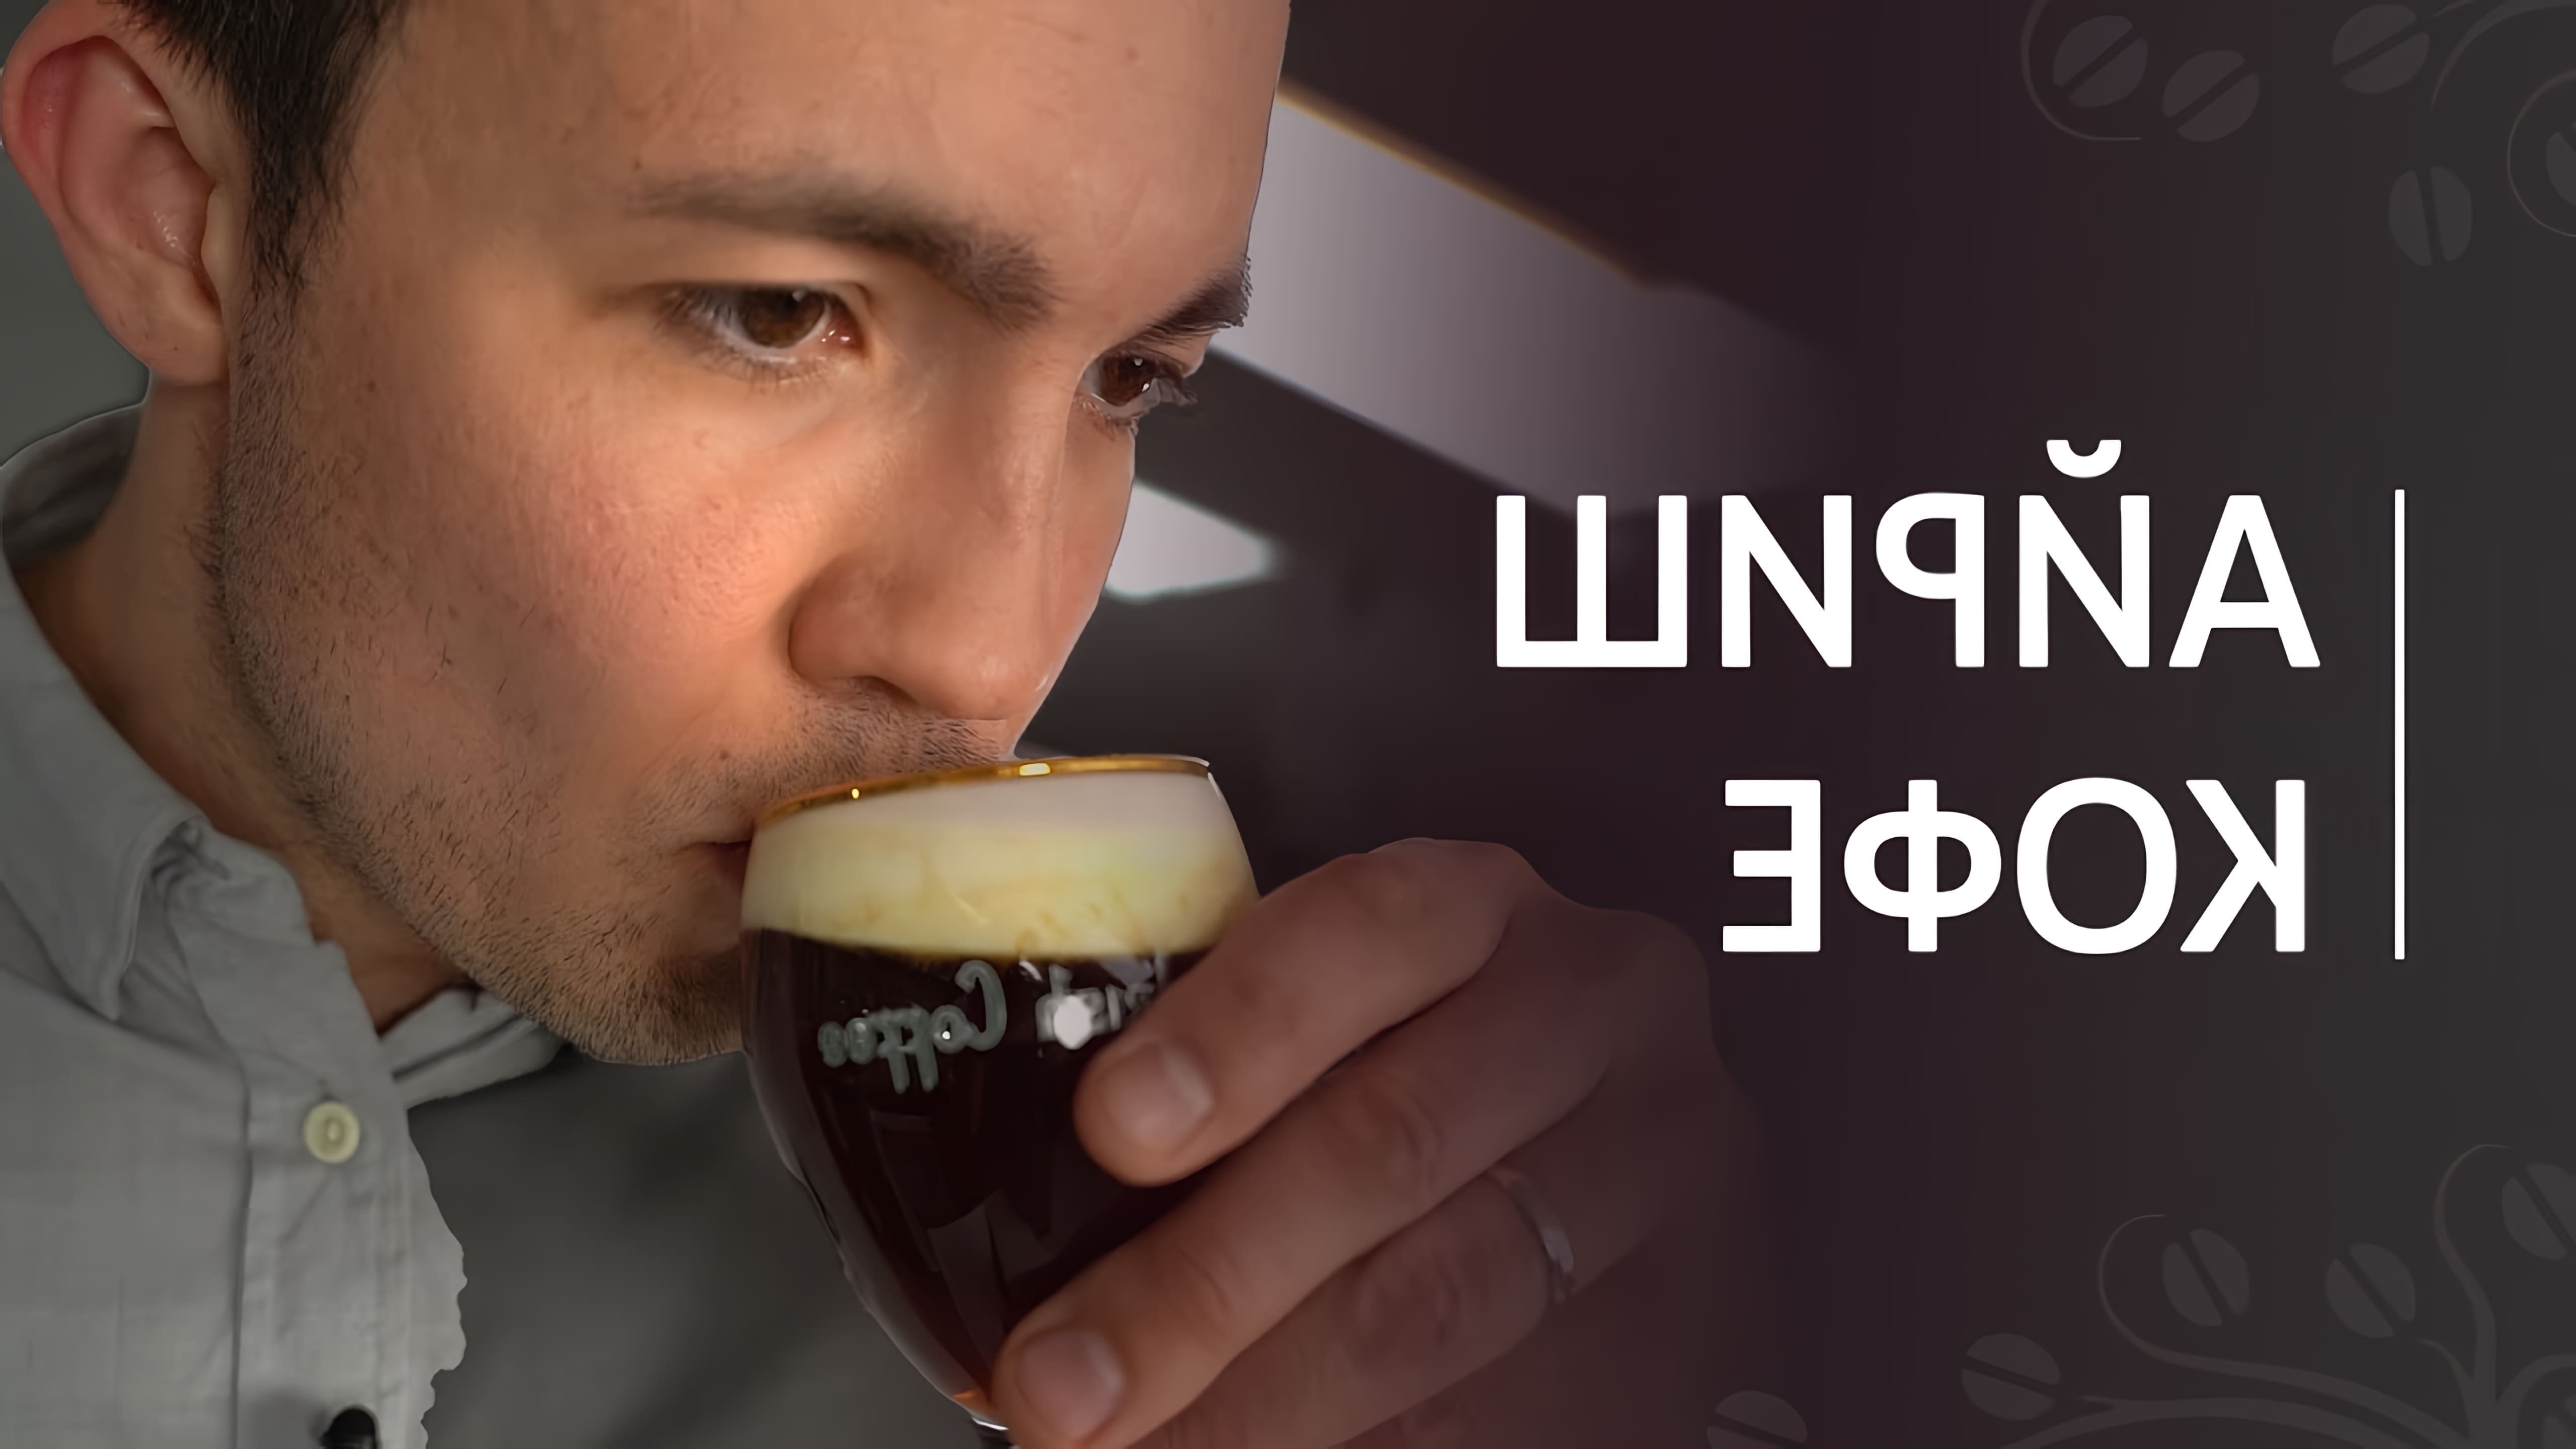 В данном видео представлен рецепт приготовления ирландского кофе, также известного как айриш кофе